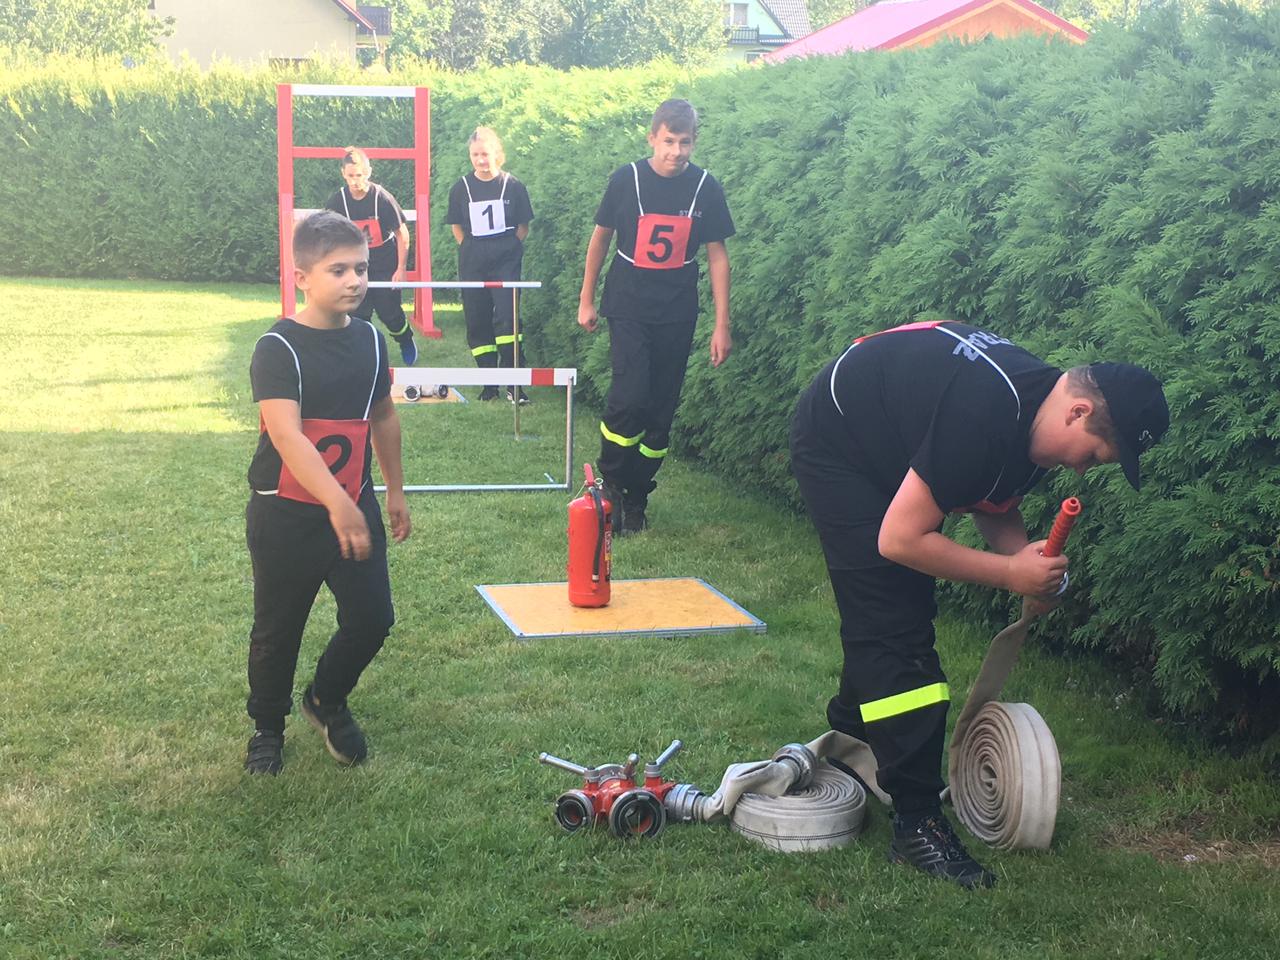 Strażacki narybek  ćwiczy w Lipowej. Młodzieżowe drużyny pożarnicze szlifują swoją formę na  nowym torze przeszkód